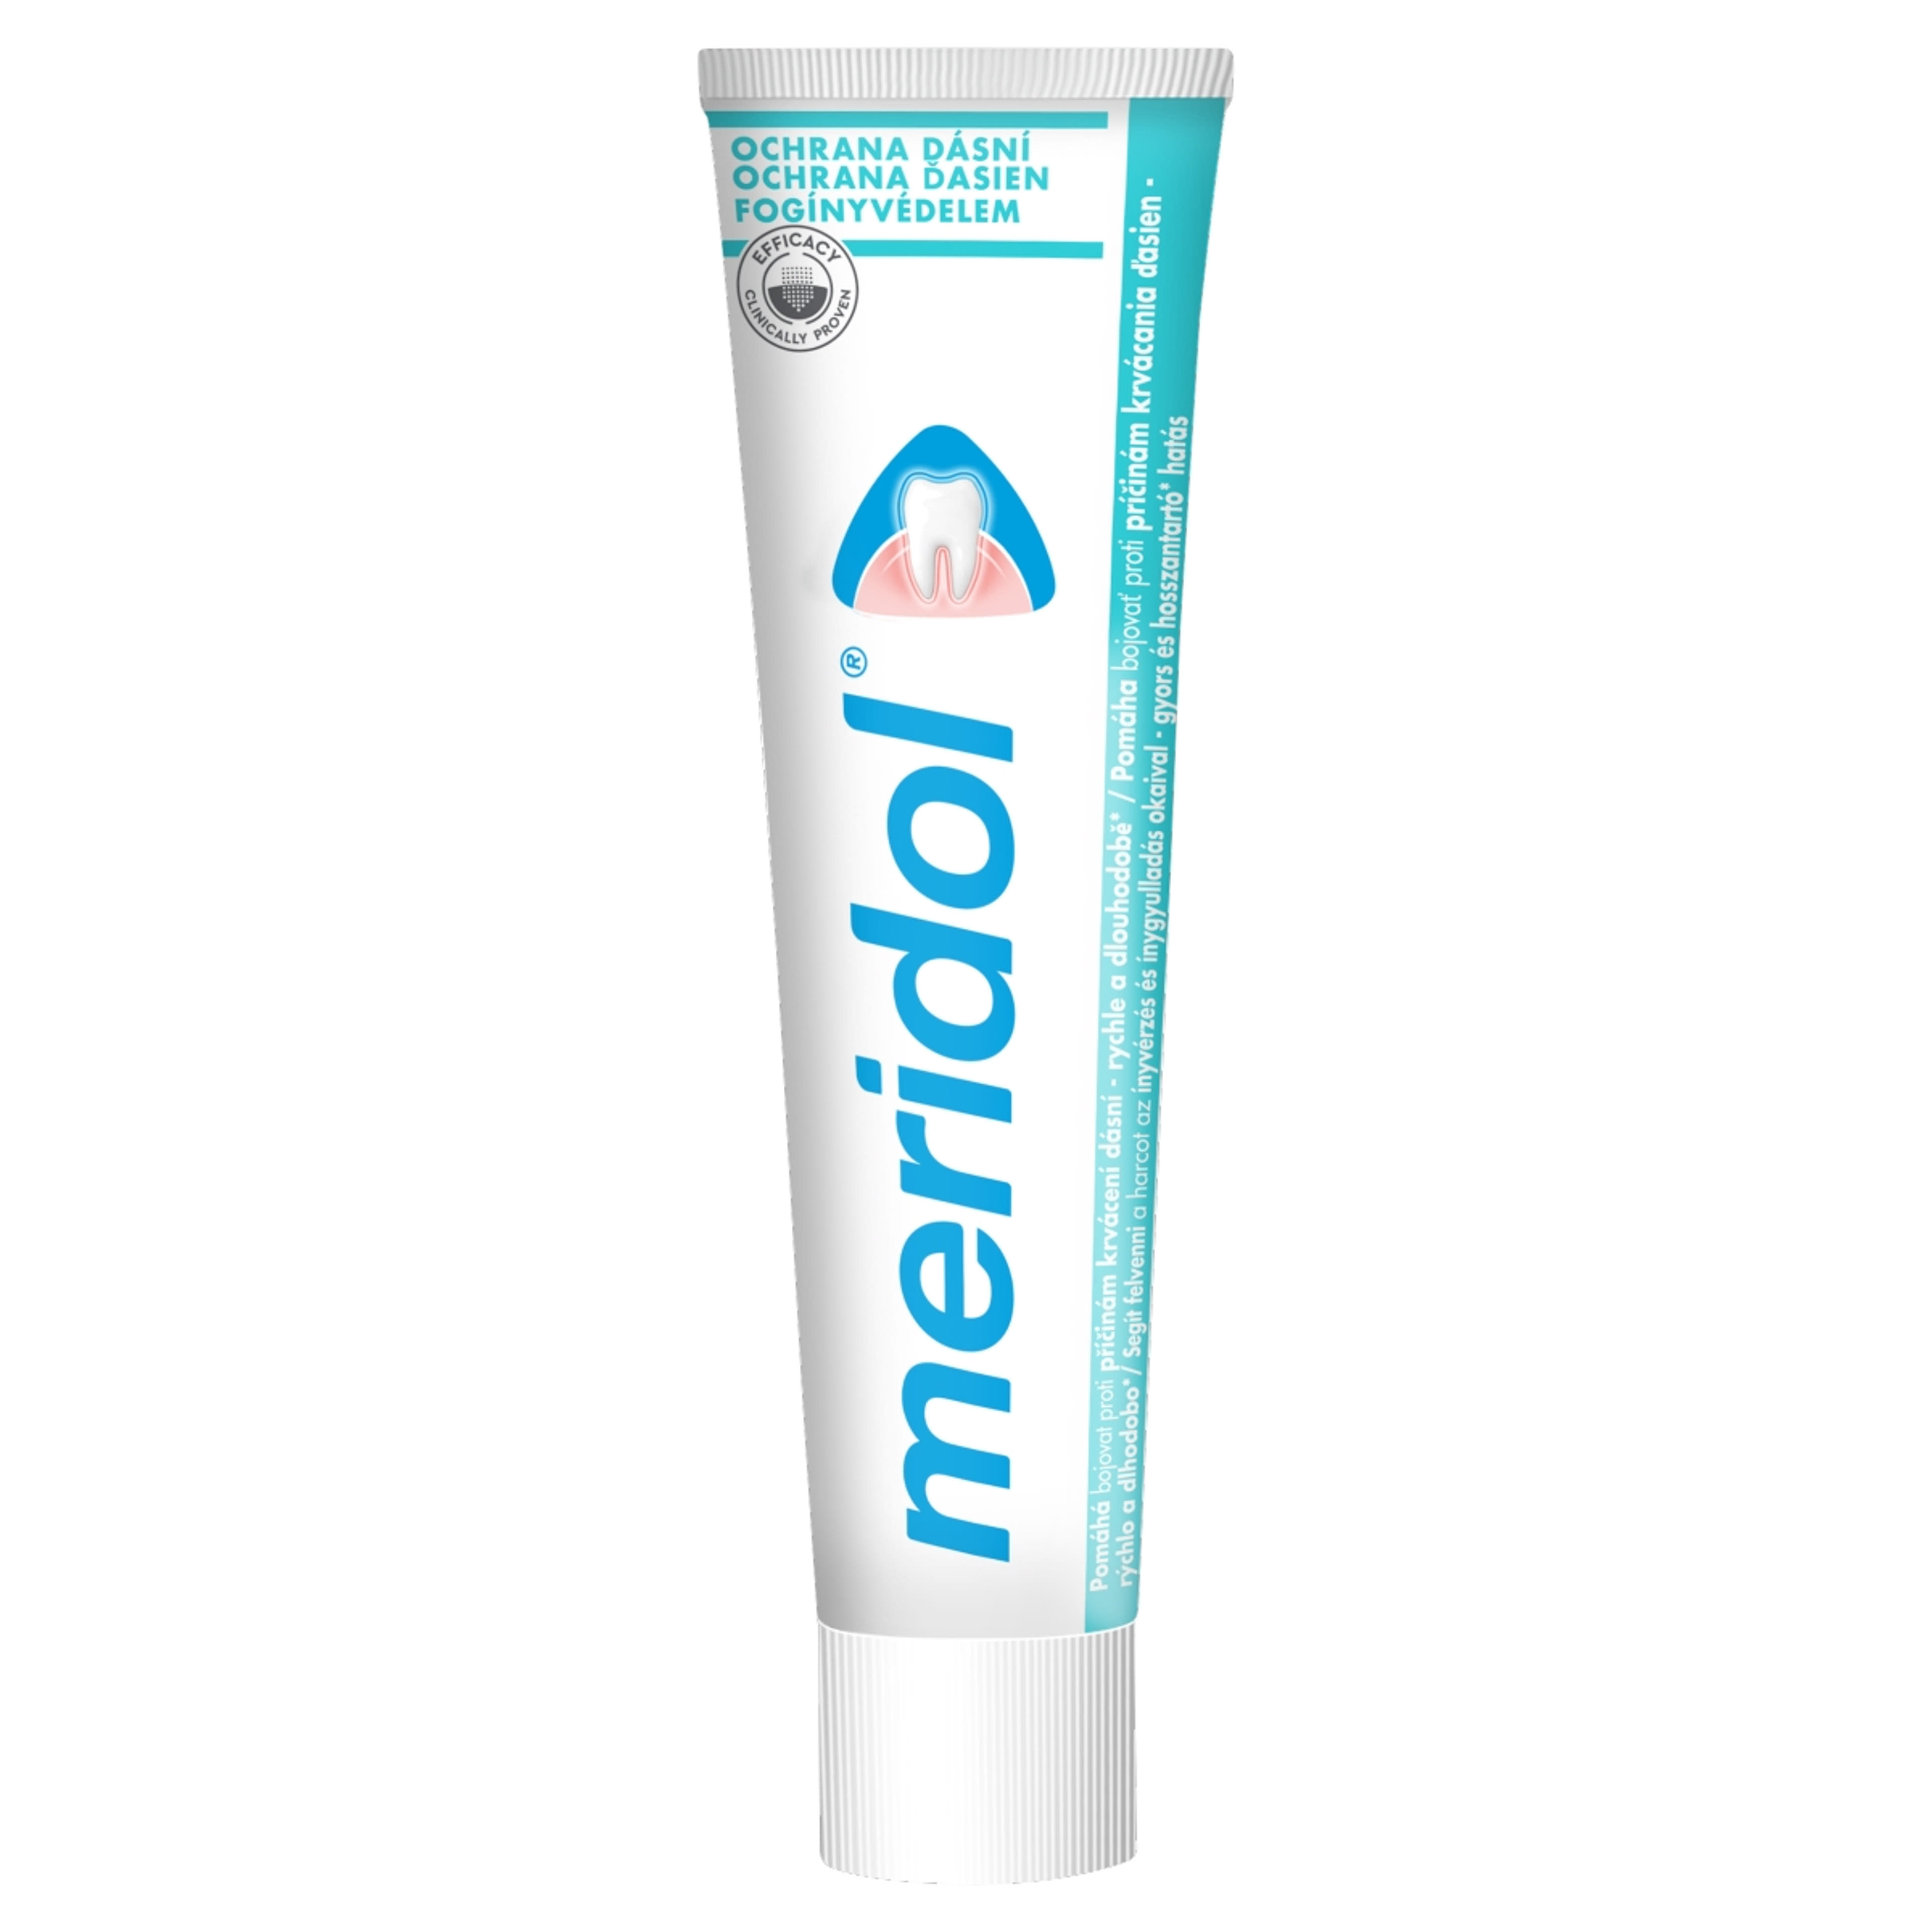 Meridol Fogínyvédelem fogkrém - 75 ml-2